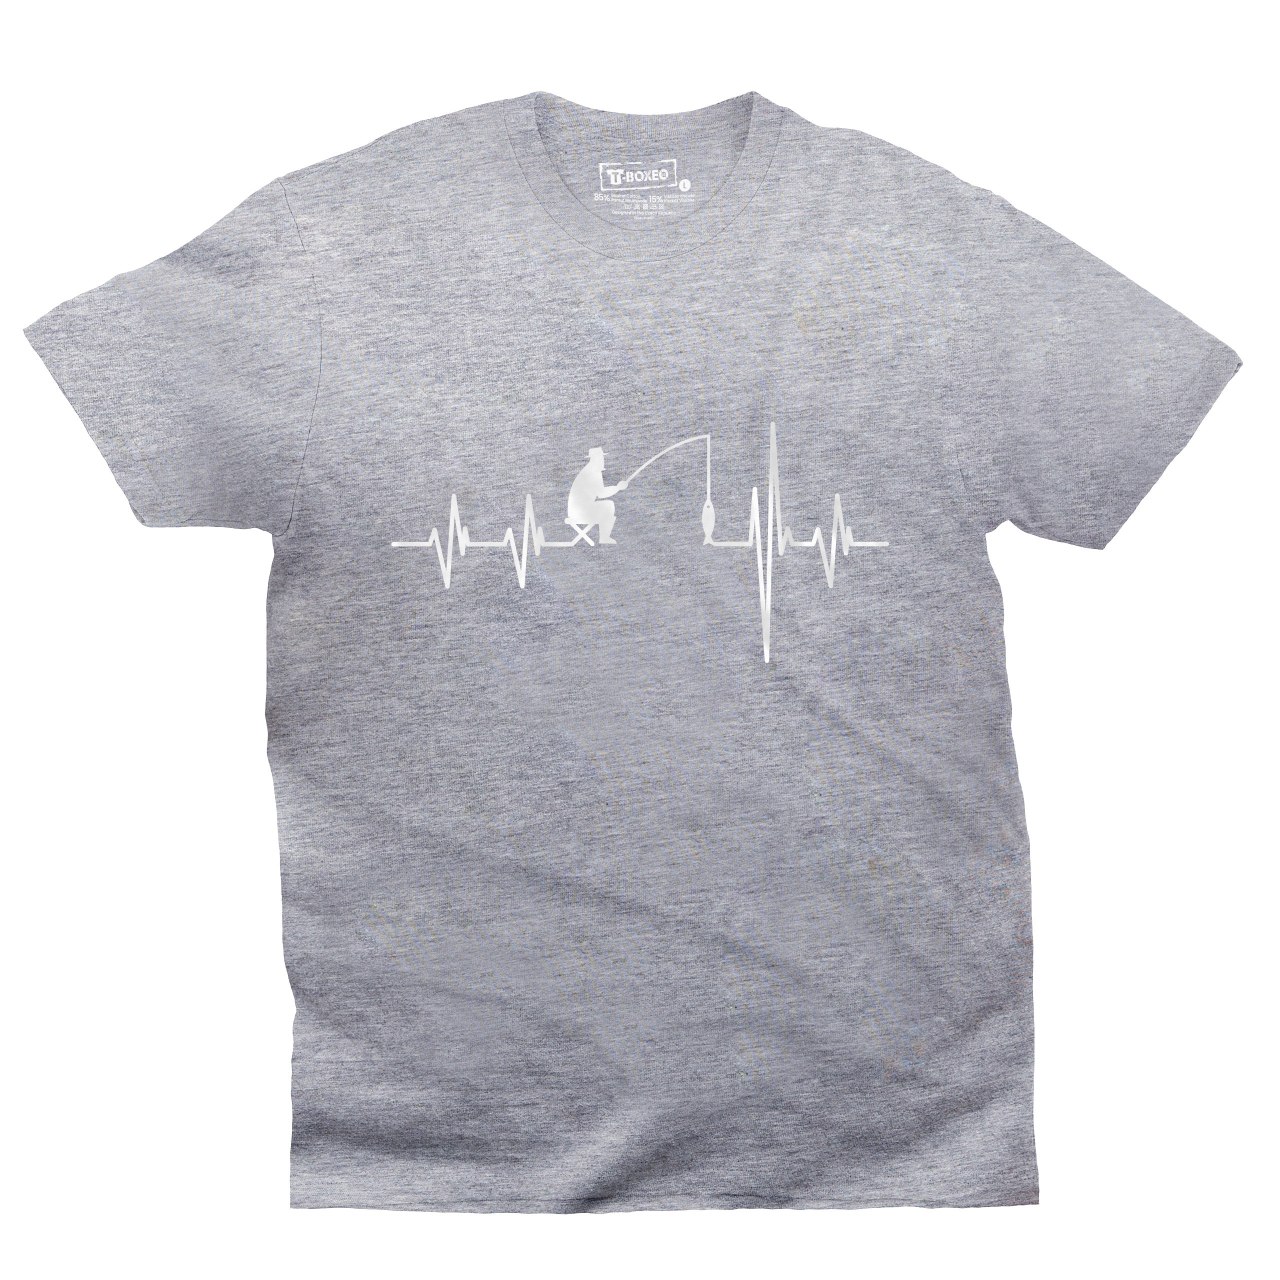 Pánské tričko s potiskem "Srdeční tep Rybář"